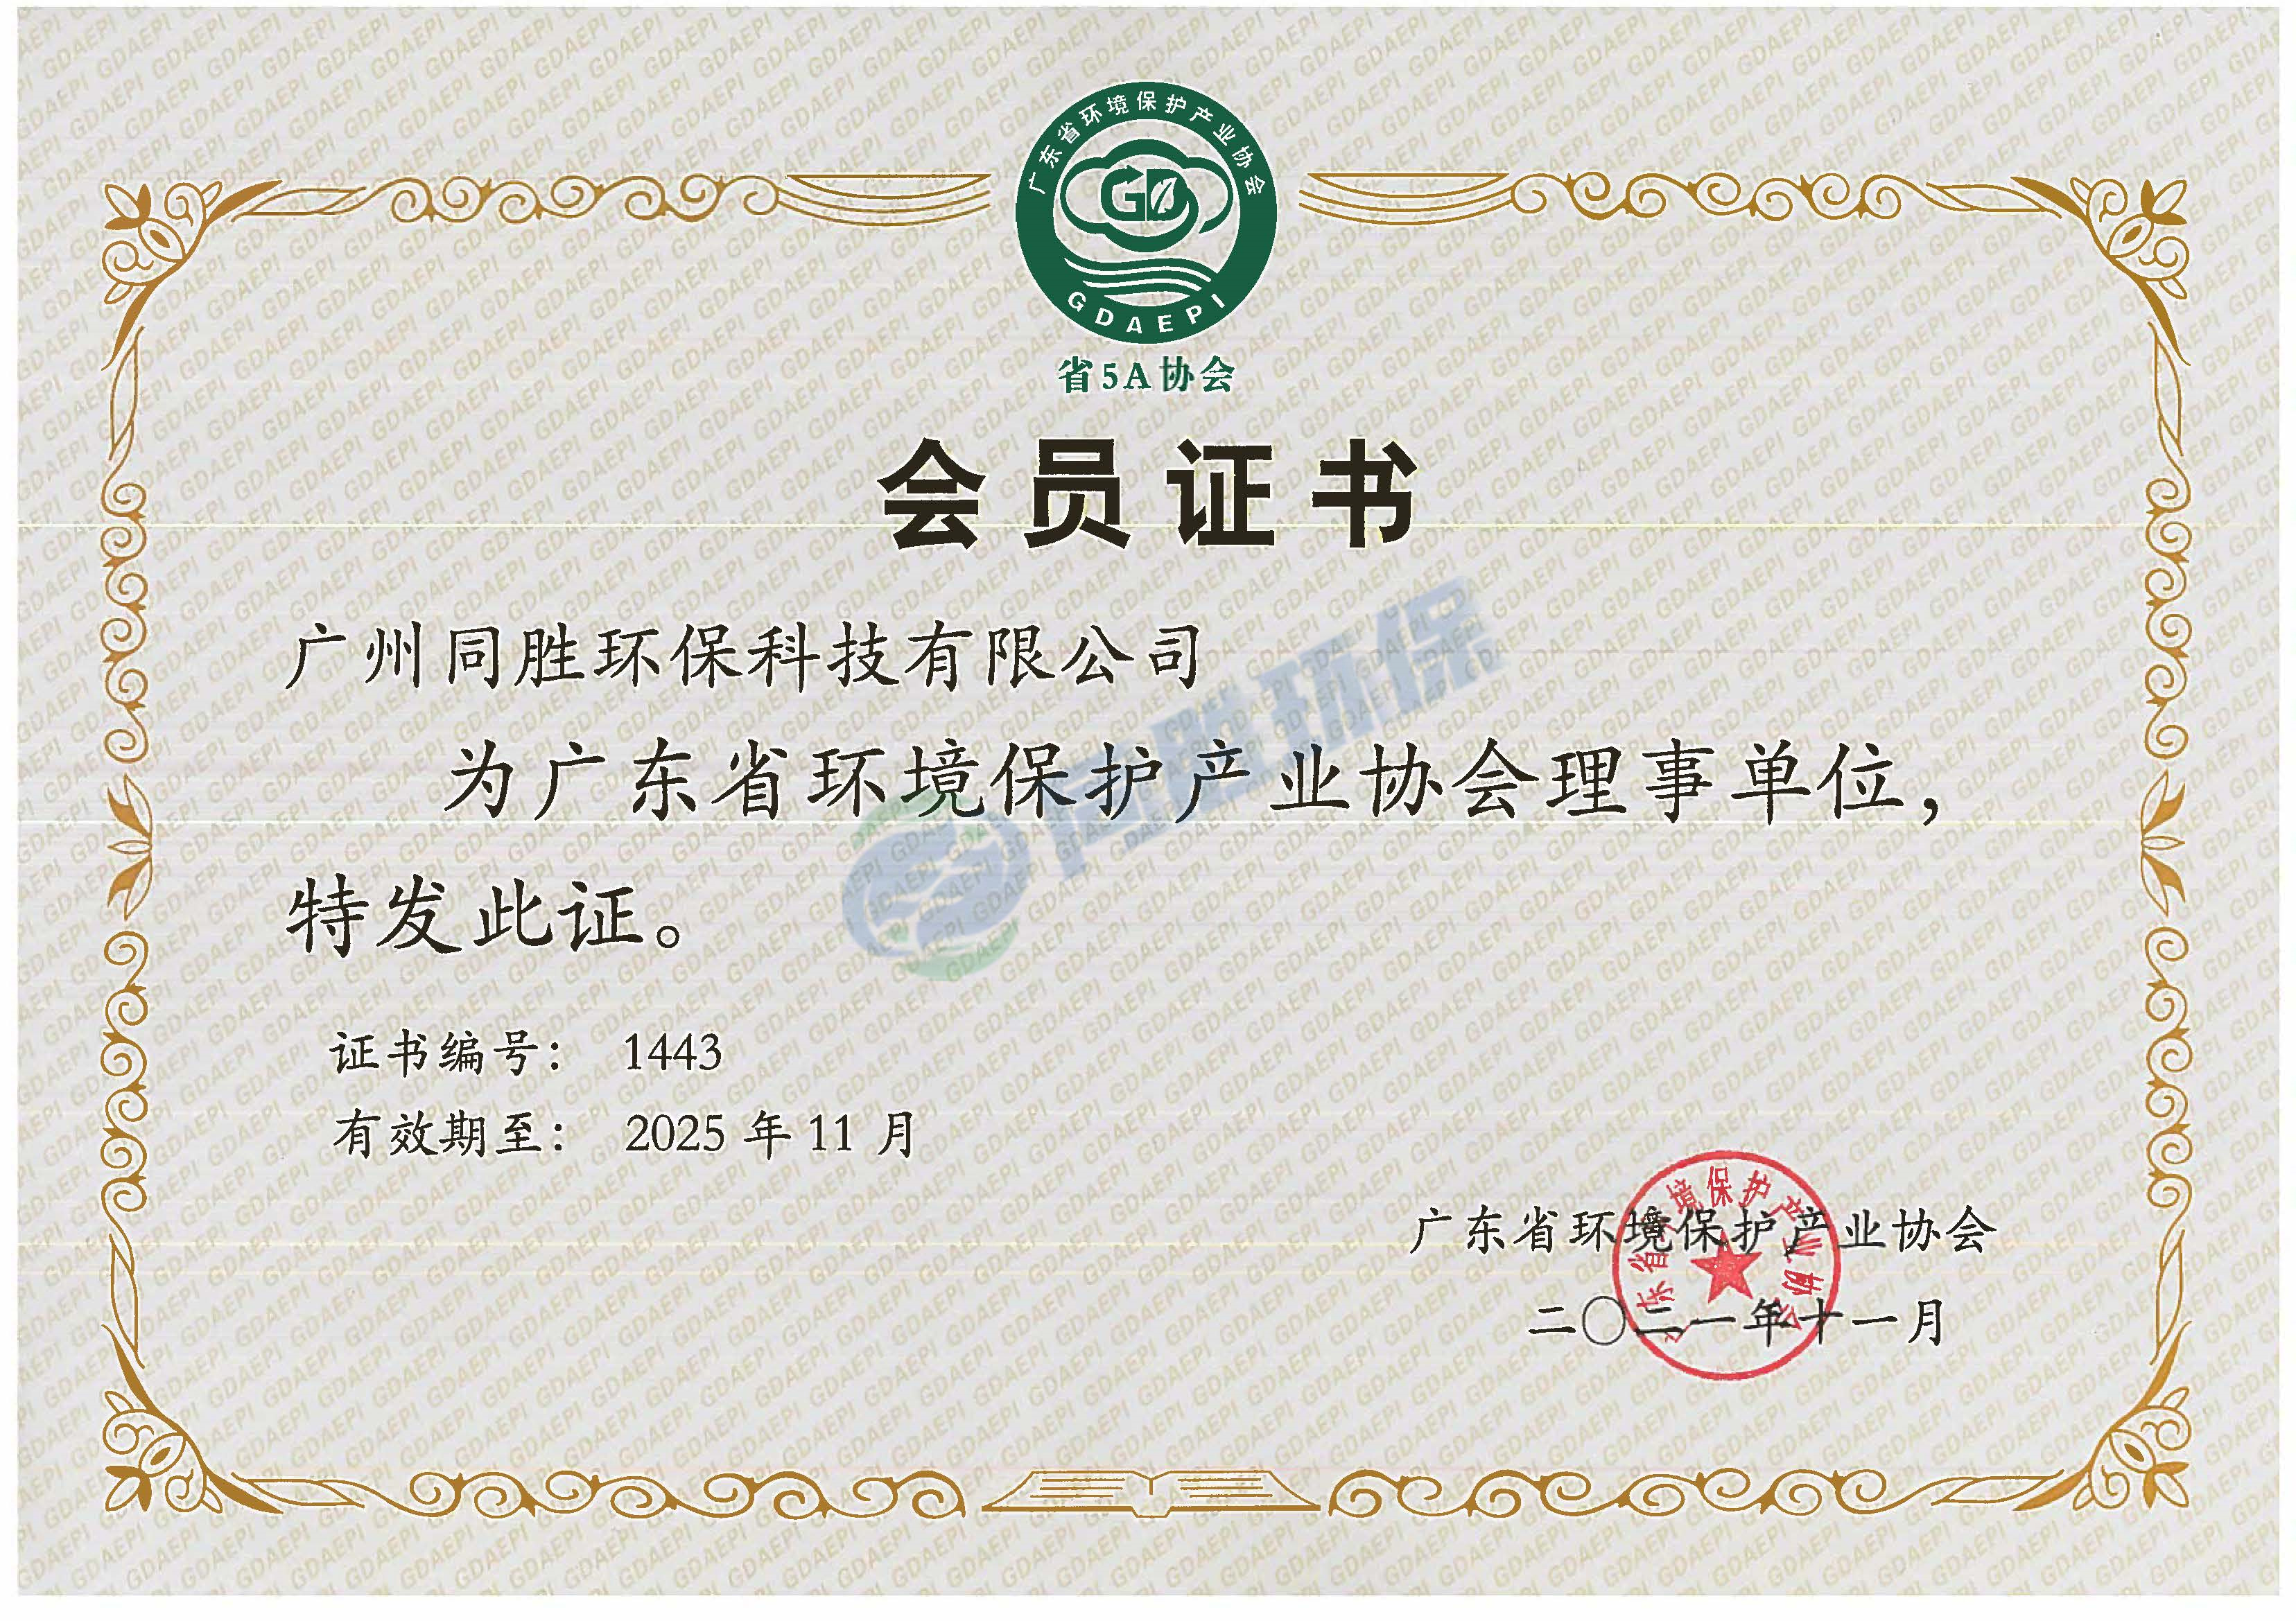 广东省环境保护产业协会理事单位证书2021.11.19.jpg